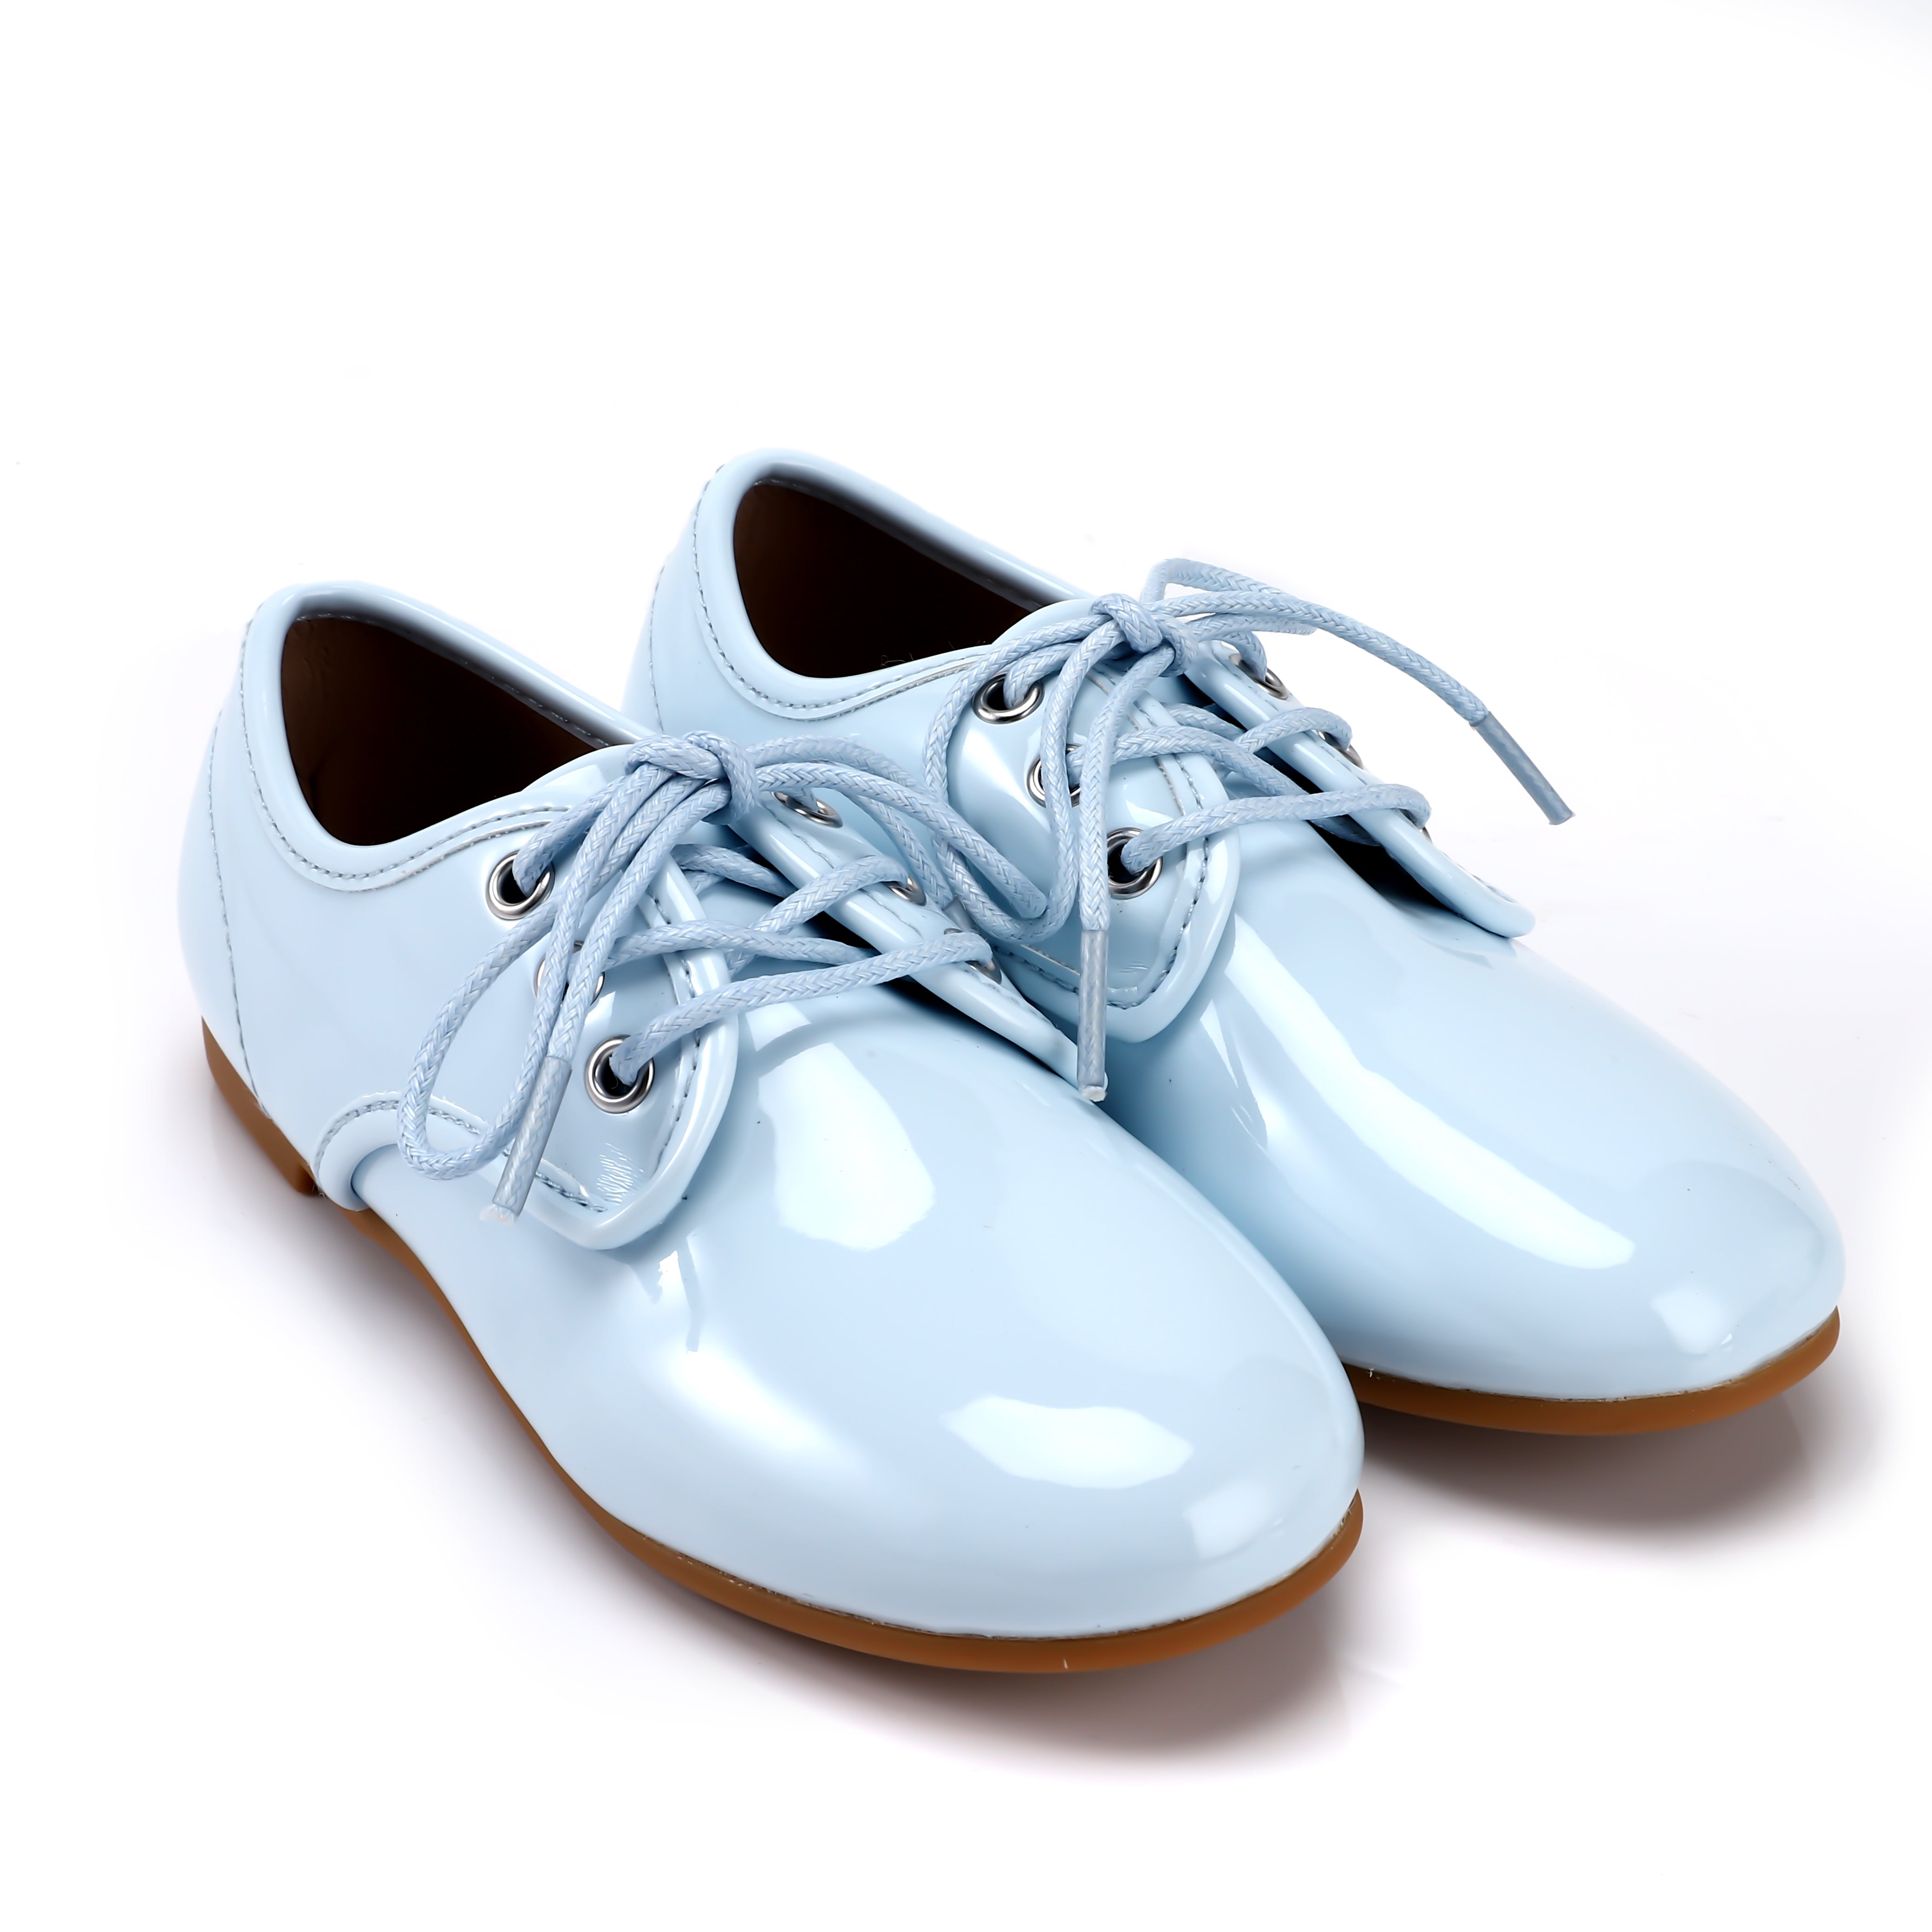 Footwear – Luibelle